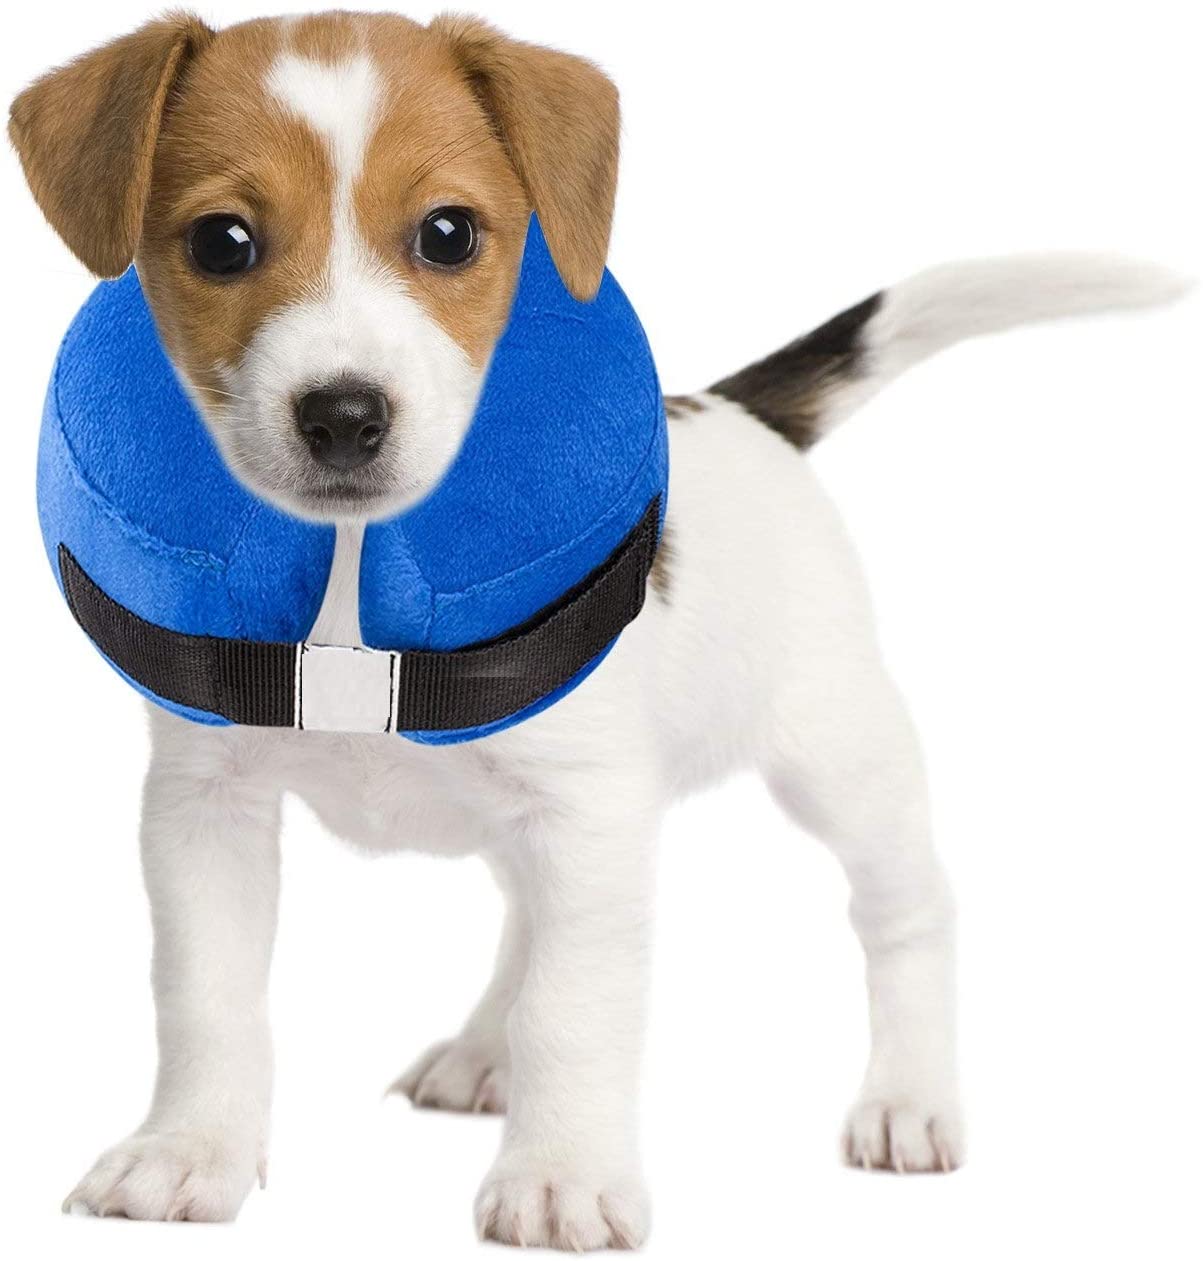  Ducomi Collar de Recuperación Inflable para Perros, Cono de Cuello Isabelino Ajustable para Mascotas Recuperación de Cirugía o Heridas - Previene la Infección por Arañazos y Picaduras (Azul, S) 